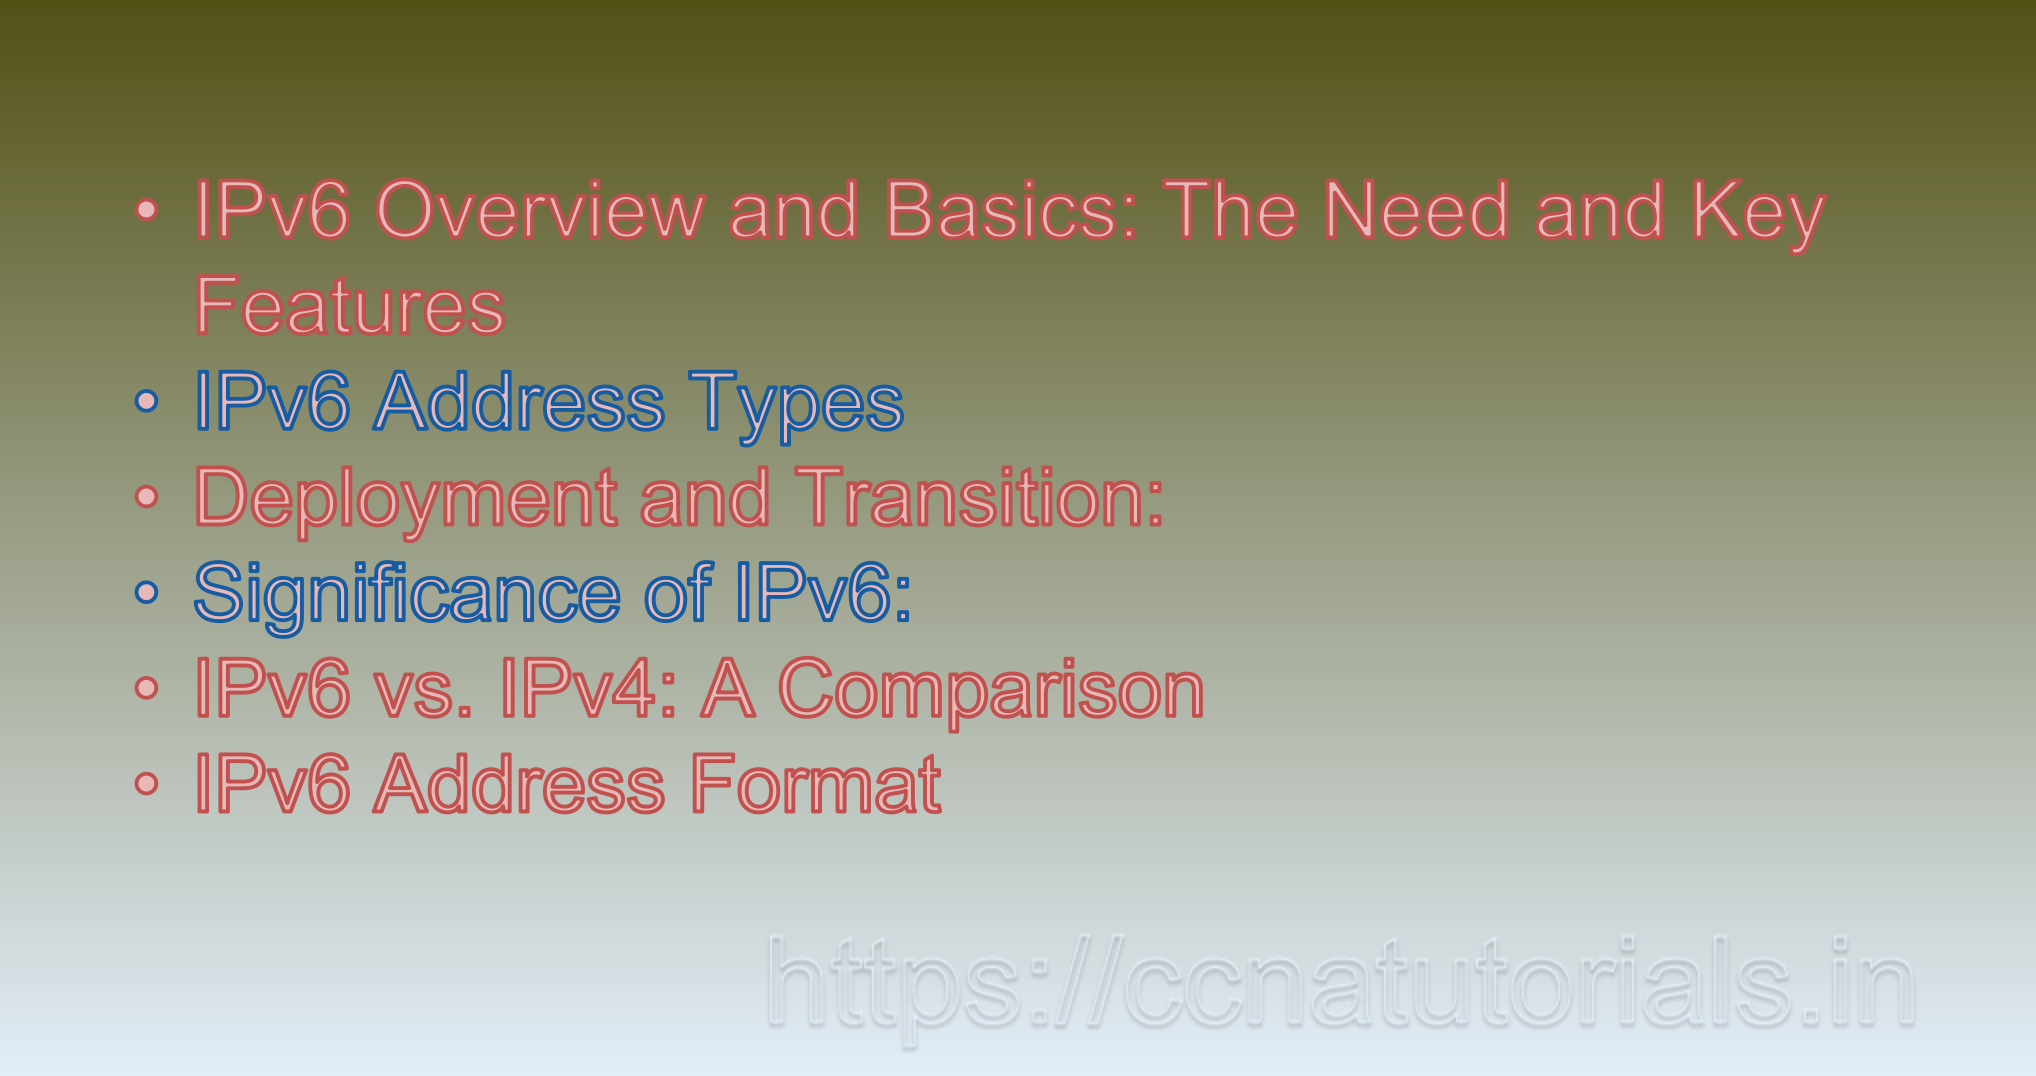 IPv6 Overview and Basics, ipv6, ccna, ccna tutorials